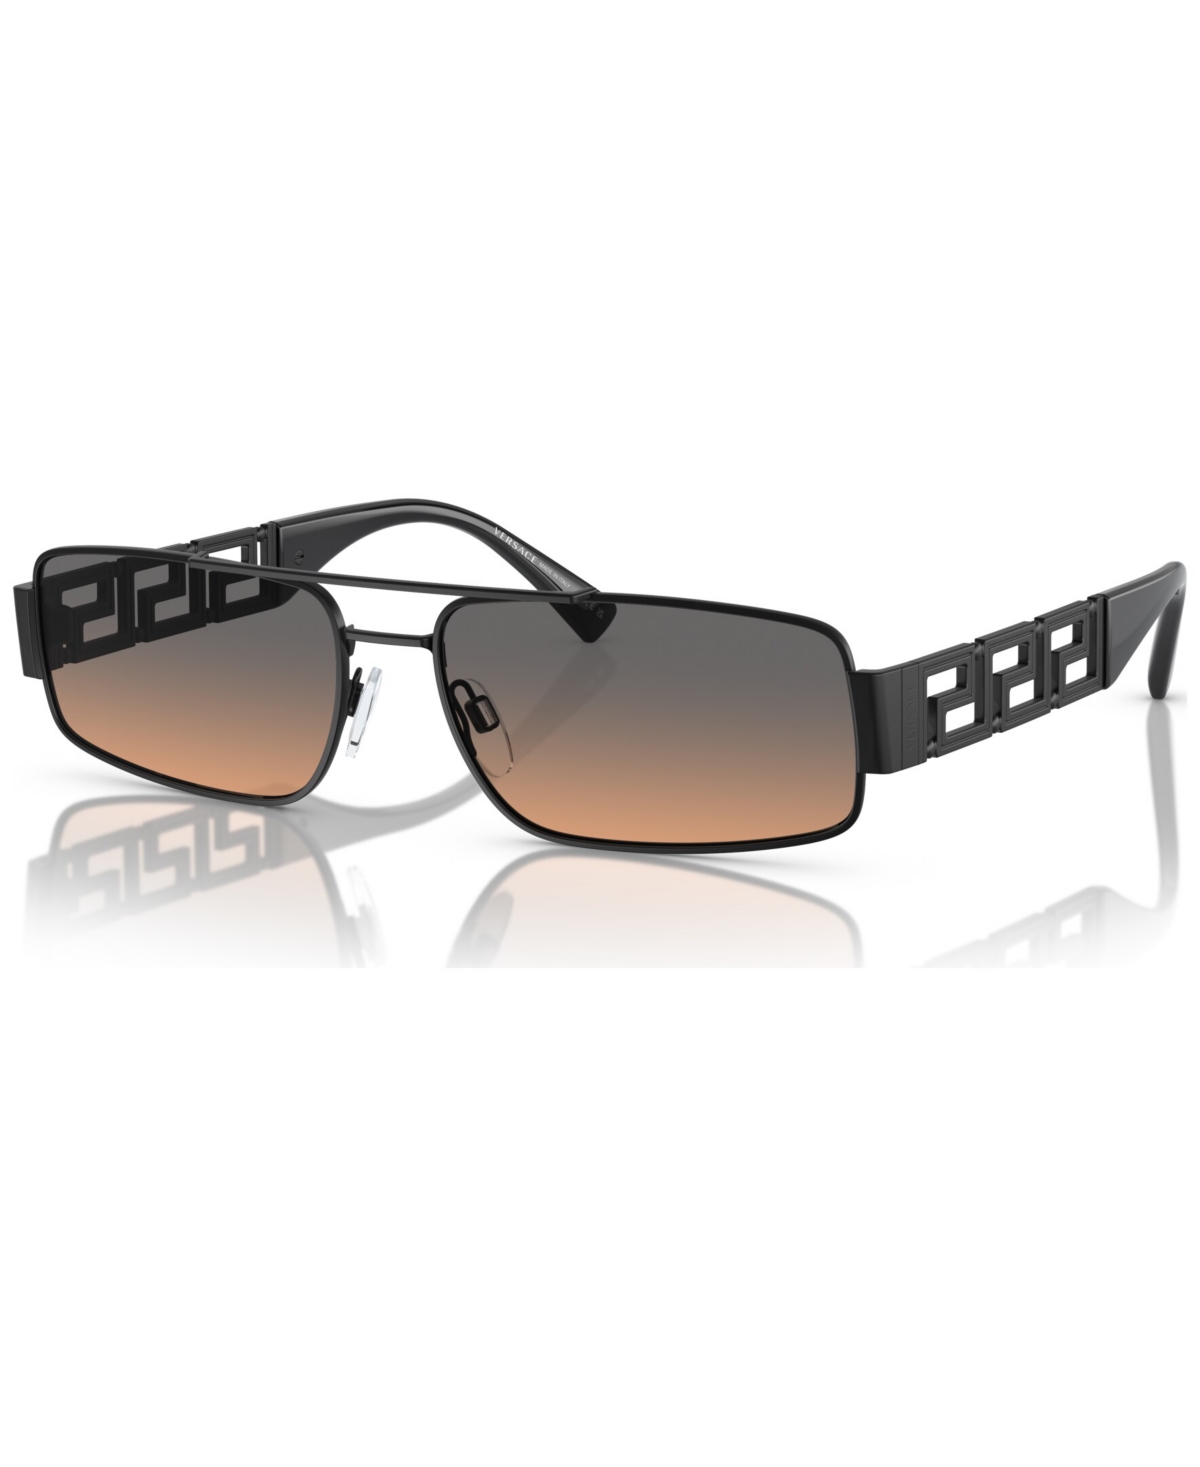 Men's Sunglasses, VE2257 - Matte Black/Gradient